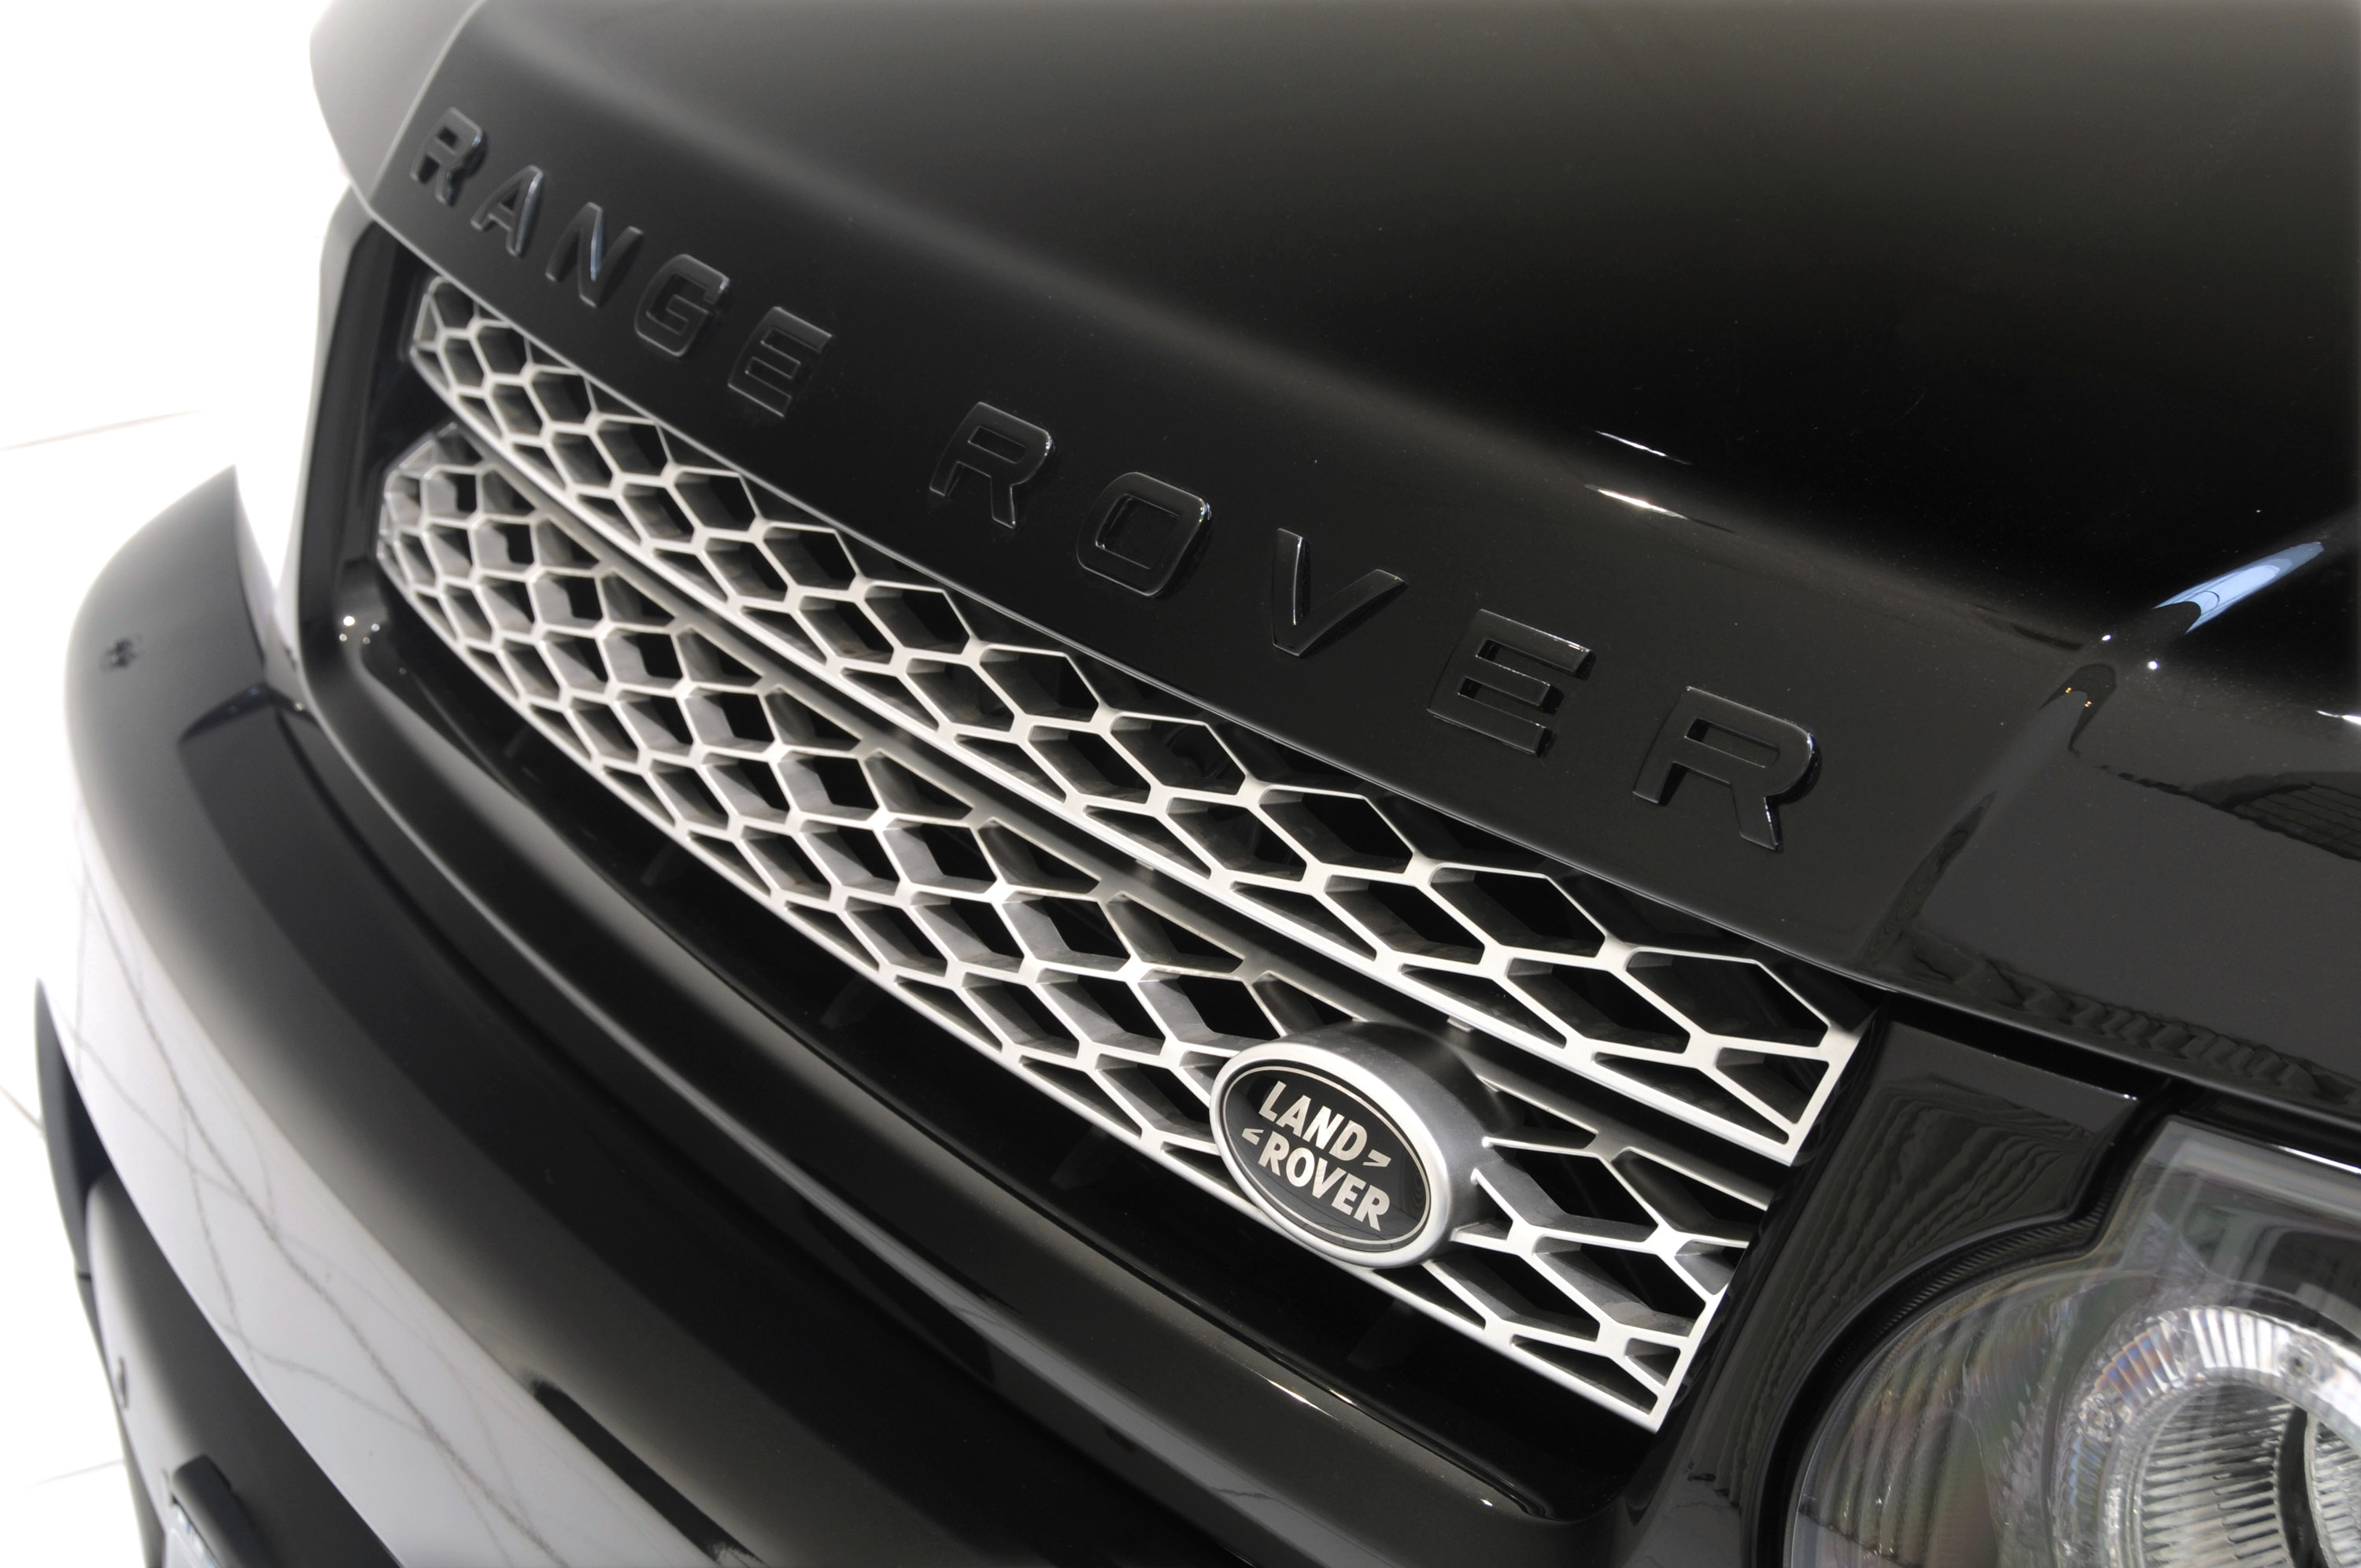 STARTECH Range Rover  Facelift